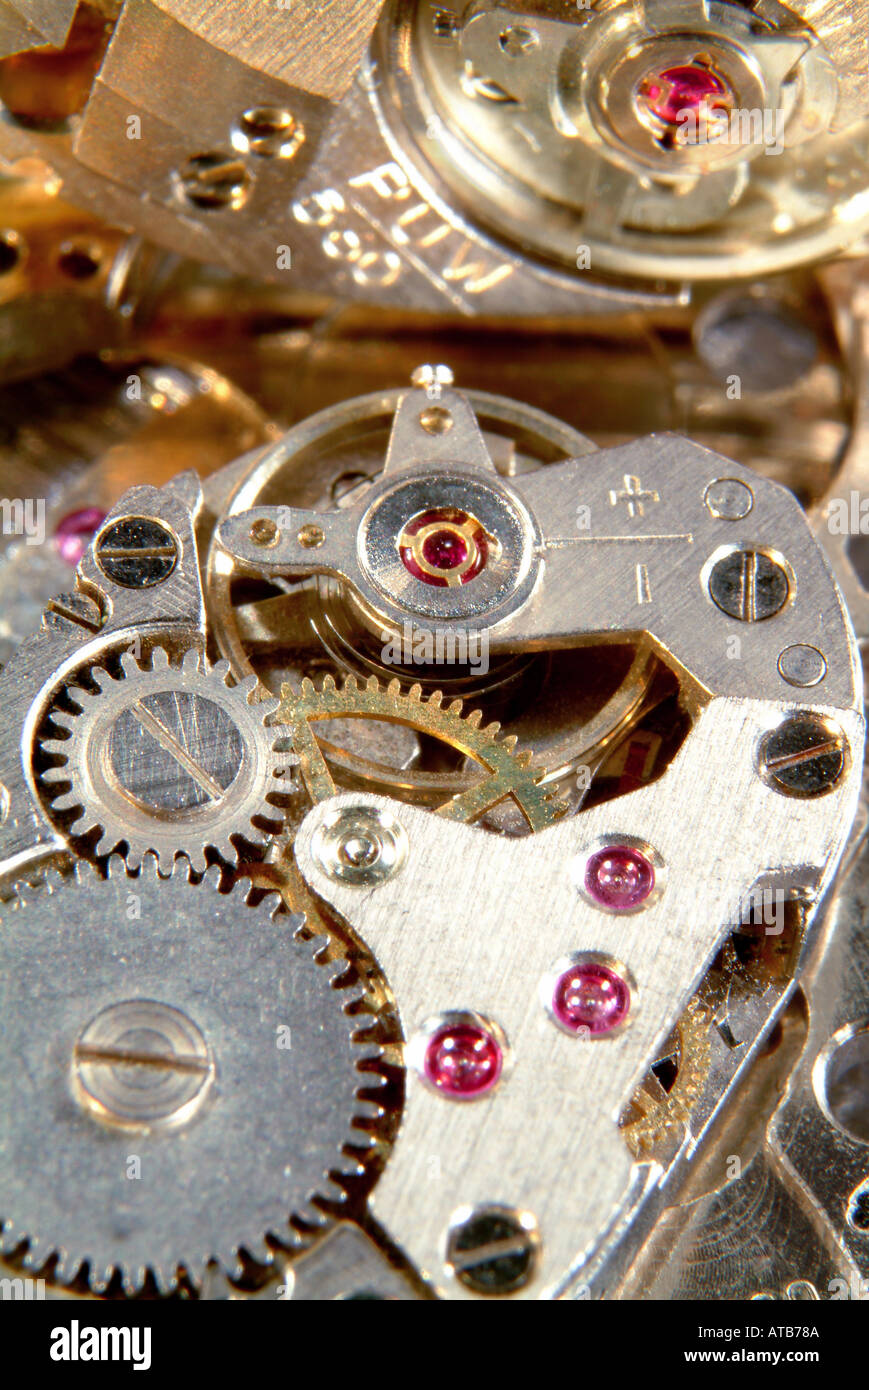 Mechanisch Uhrwerke makro Foto Stock